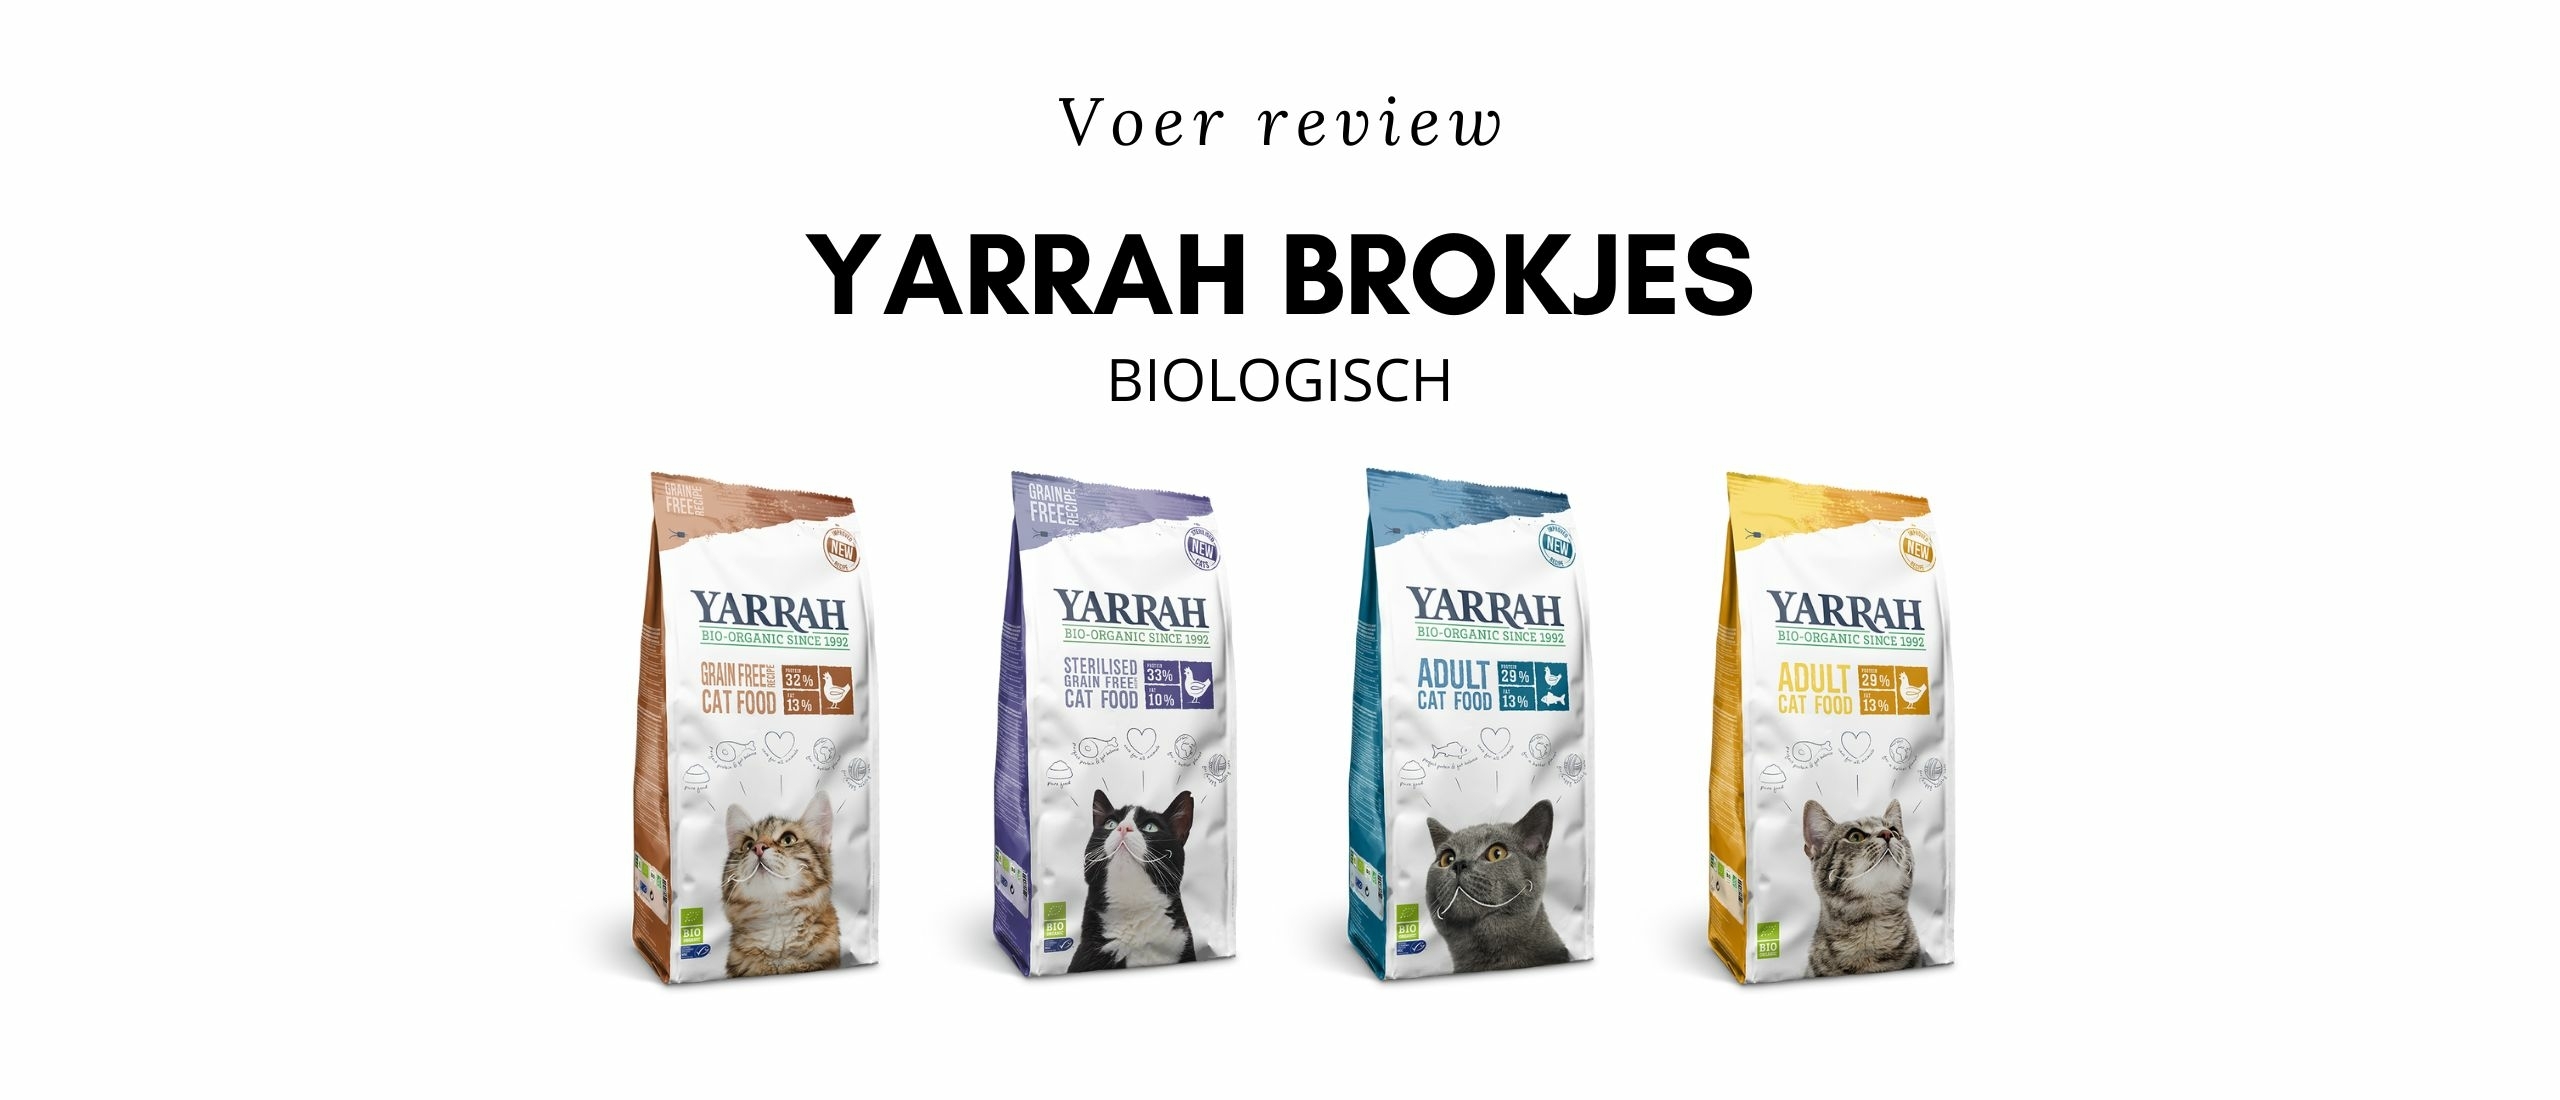 Voer review Yarrah brokjes